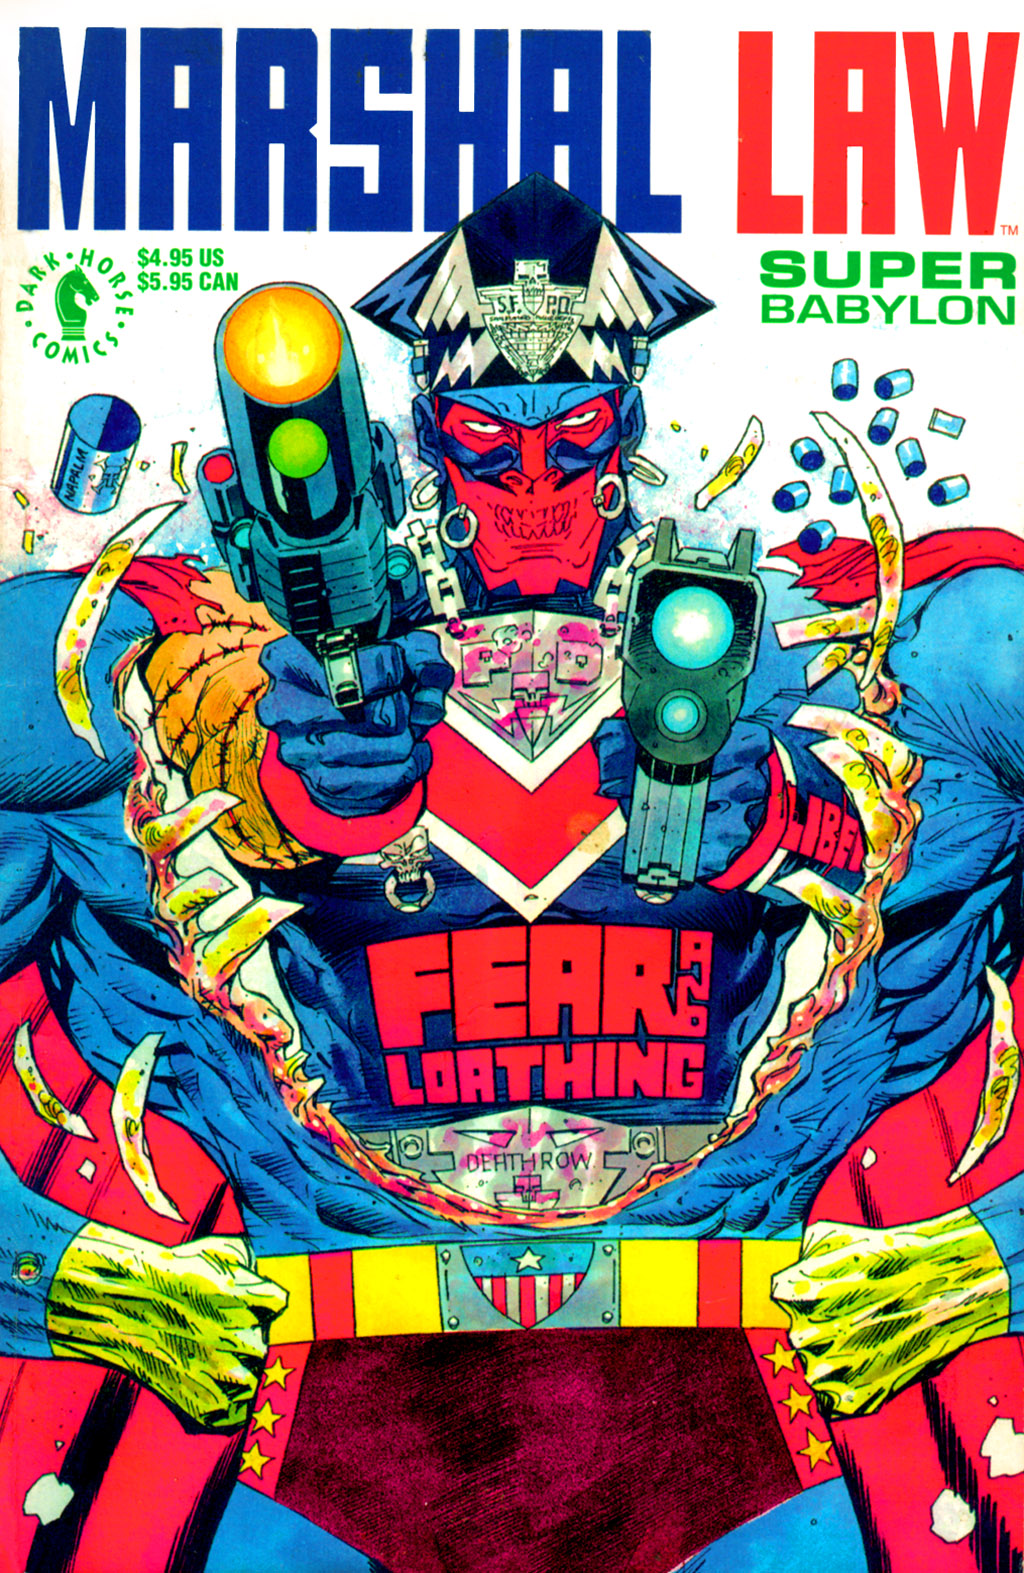 Read online Marshal Law: Super Babylon comic -  Issue # Full - 1